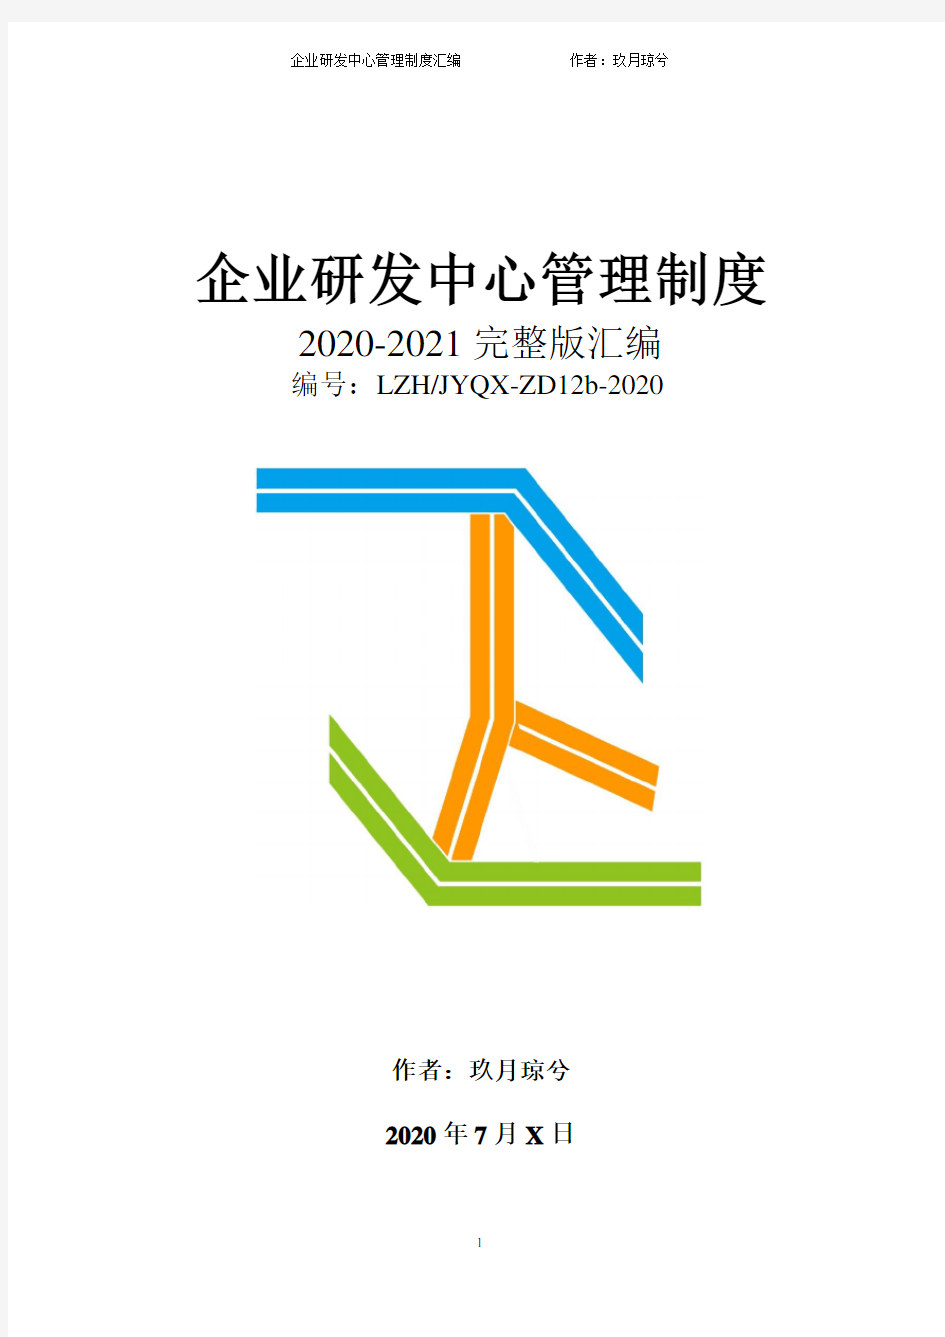 研发中心全套组织架构设计及管理制度(2020年完整版)